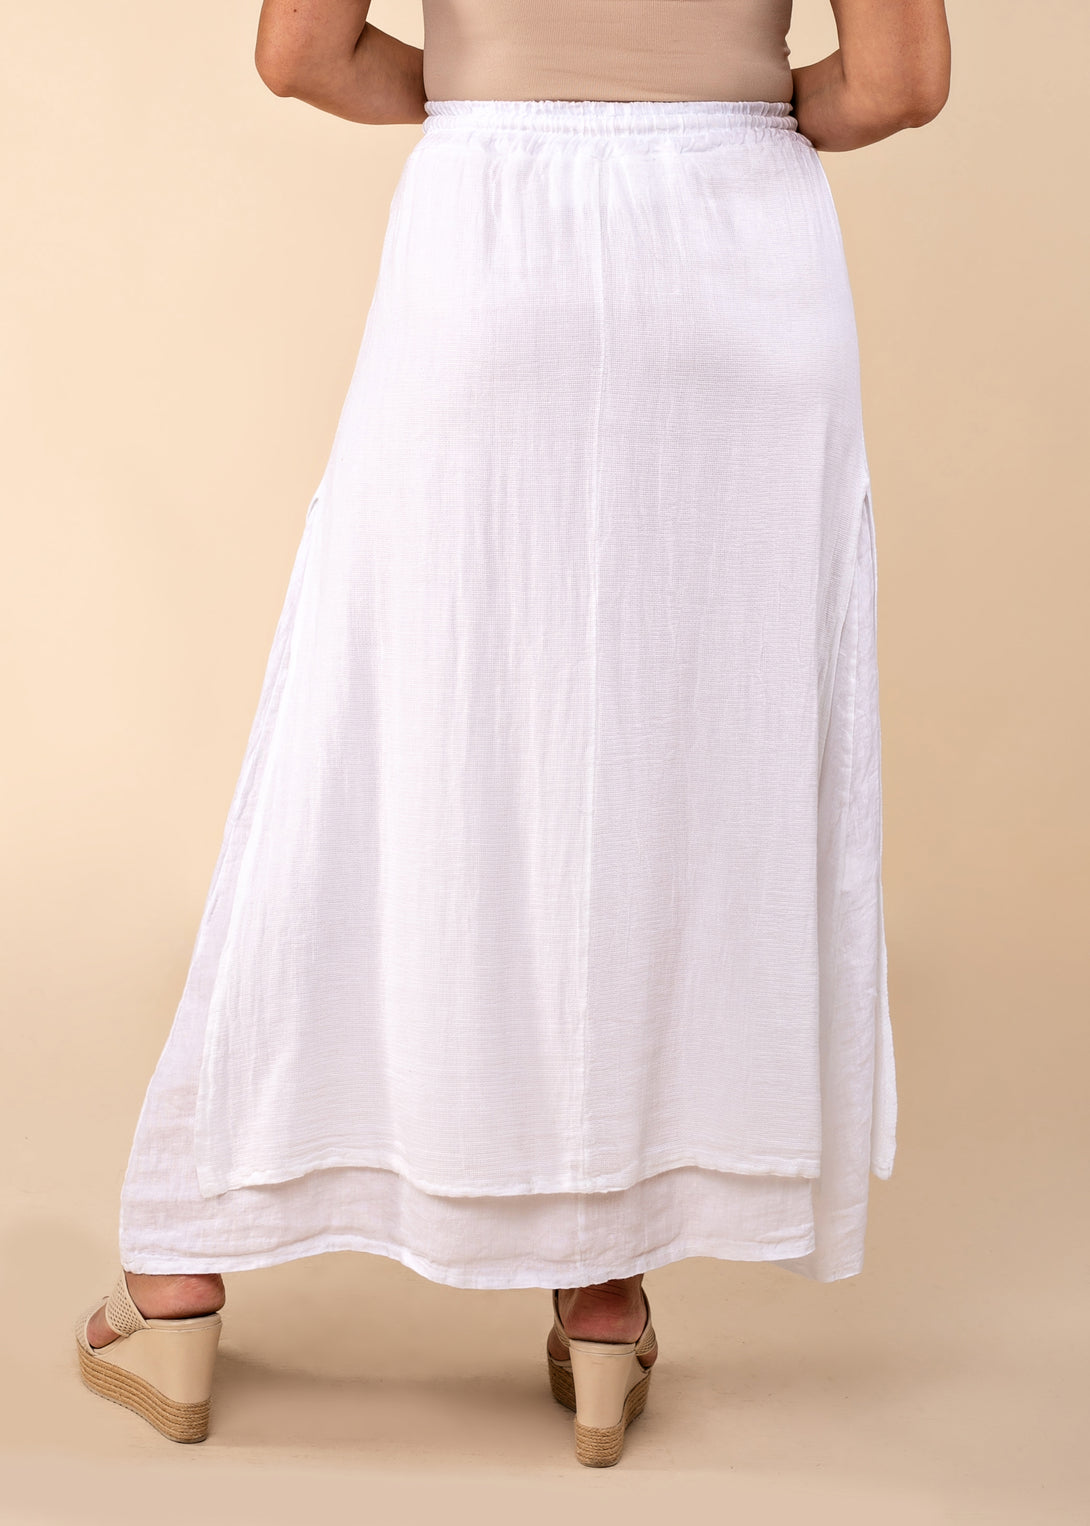 Livy Linen Blend Skirt in White - Imagine Fashion